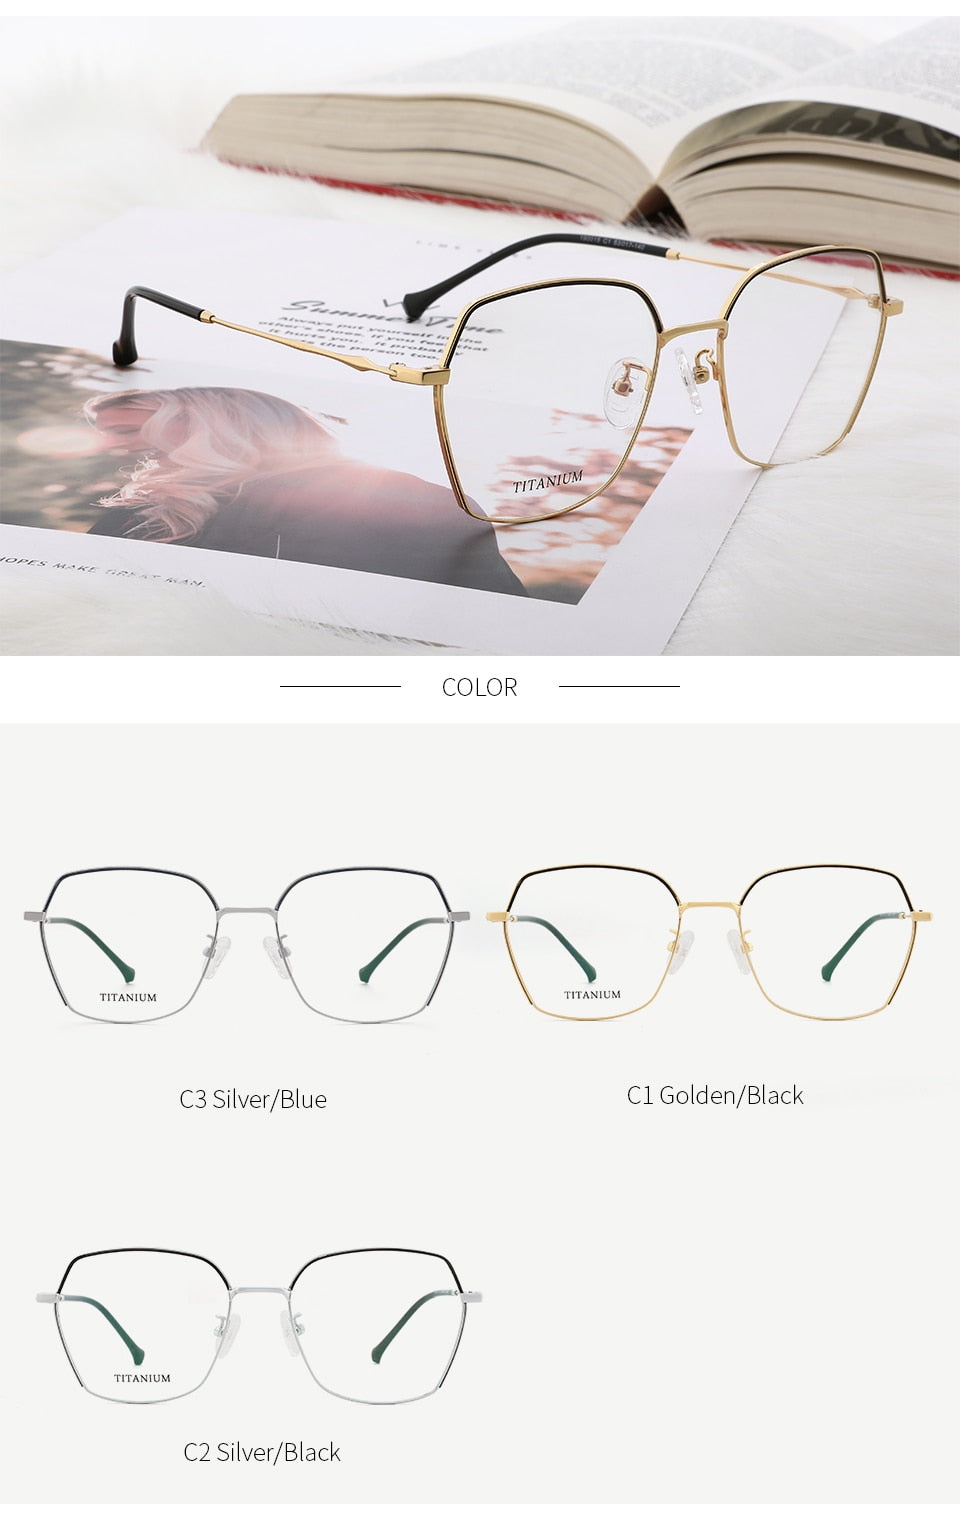 Kansept Women's Eyeglasses Titanium Alloy Glasses Frame 190015c1 Frame Kansept   